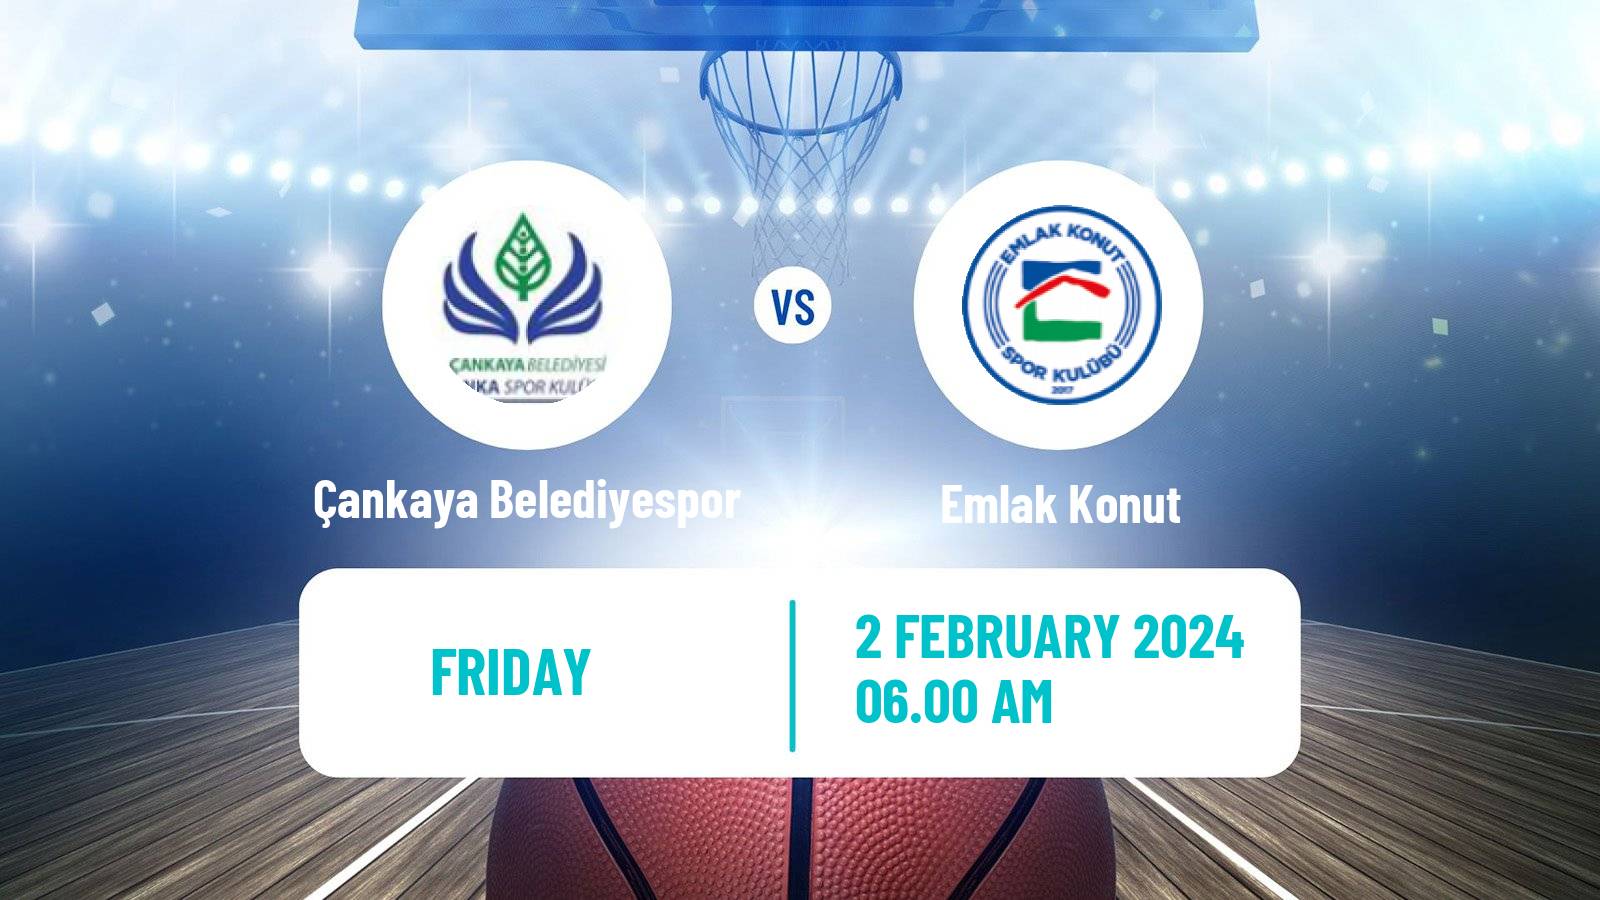 Basketball Turkish Basketball League Women Çankaya Belediyespor - Emlak Konut